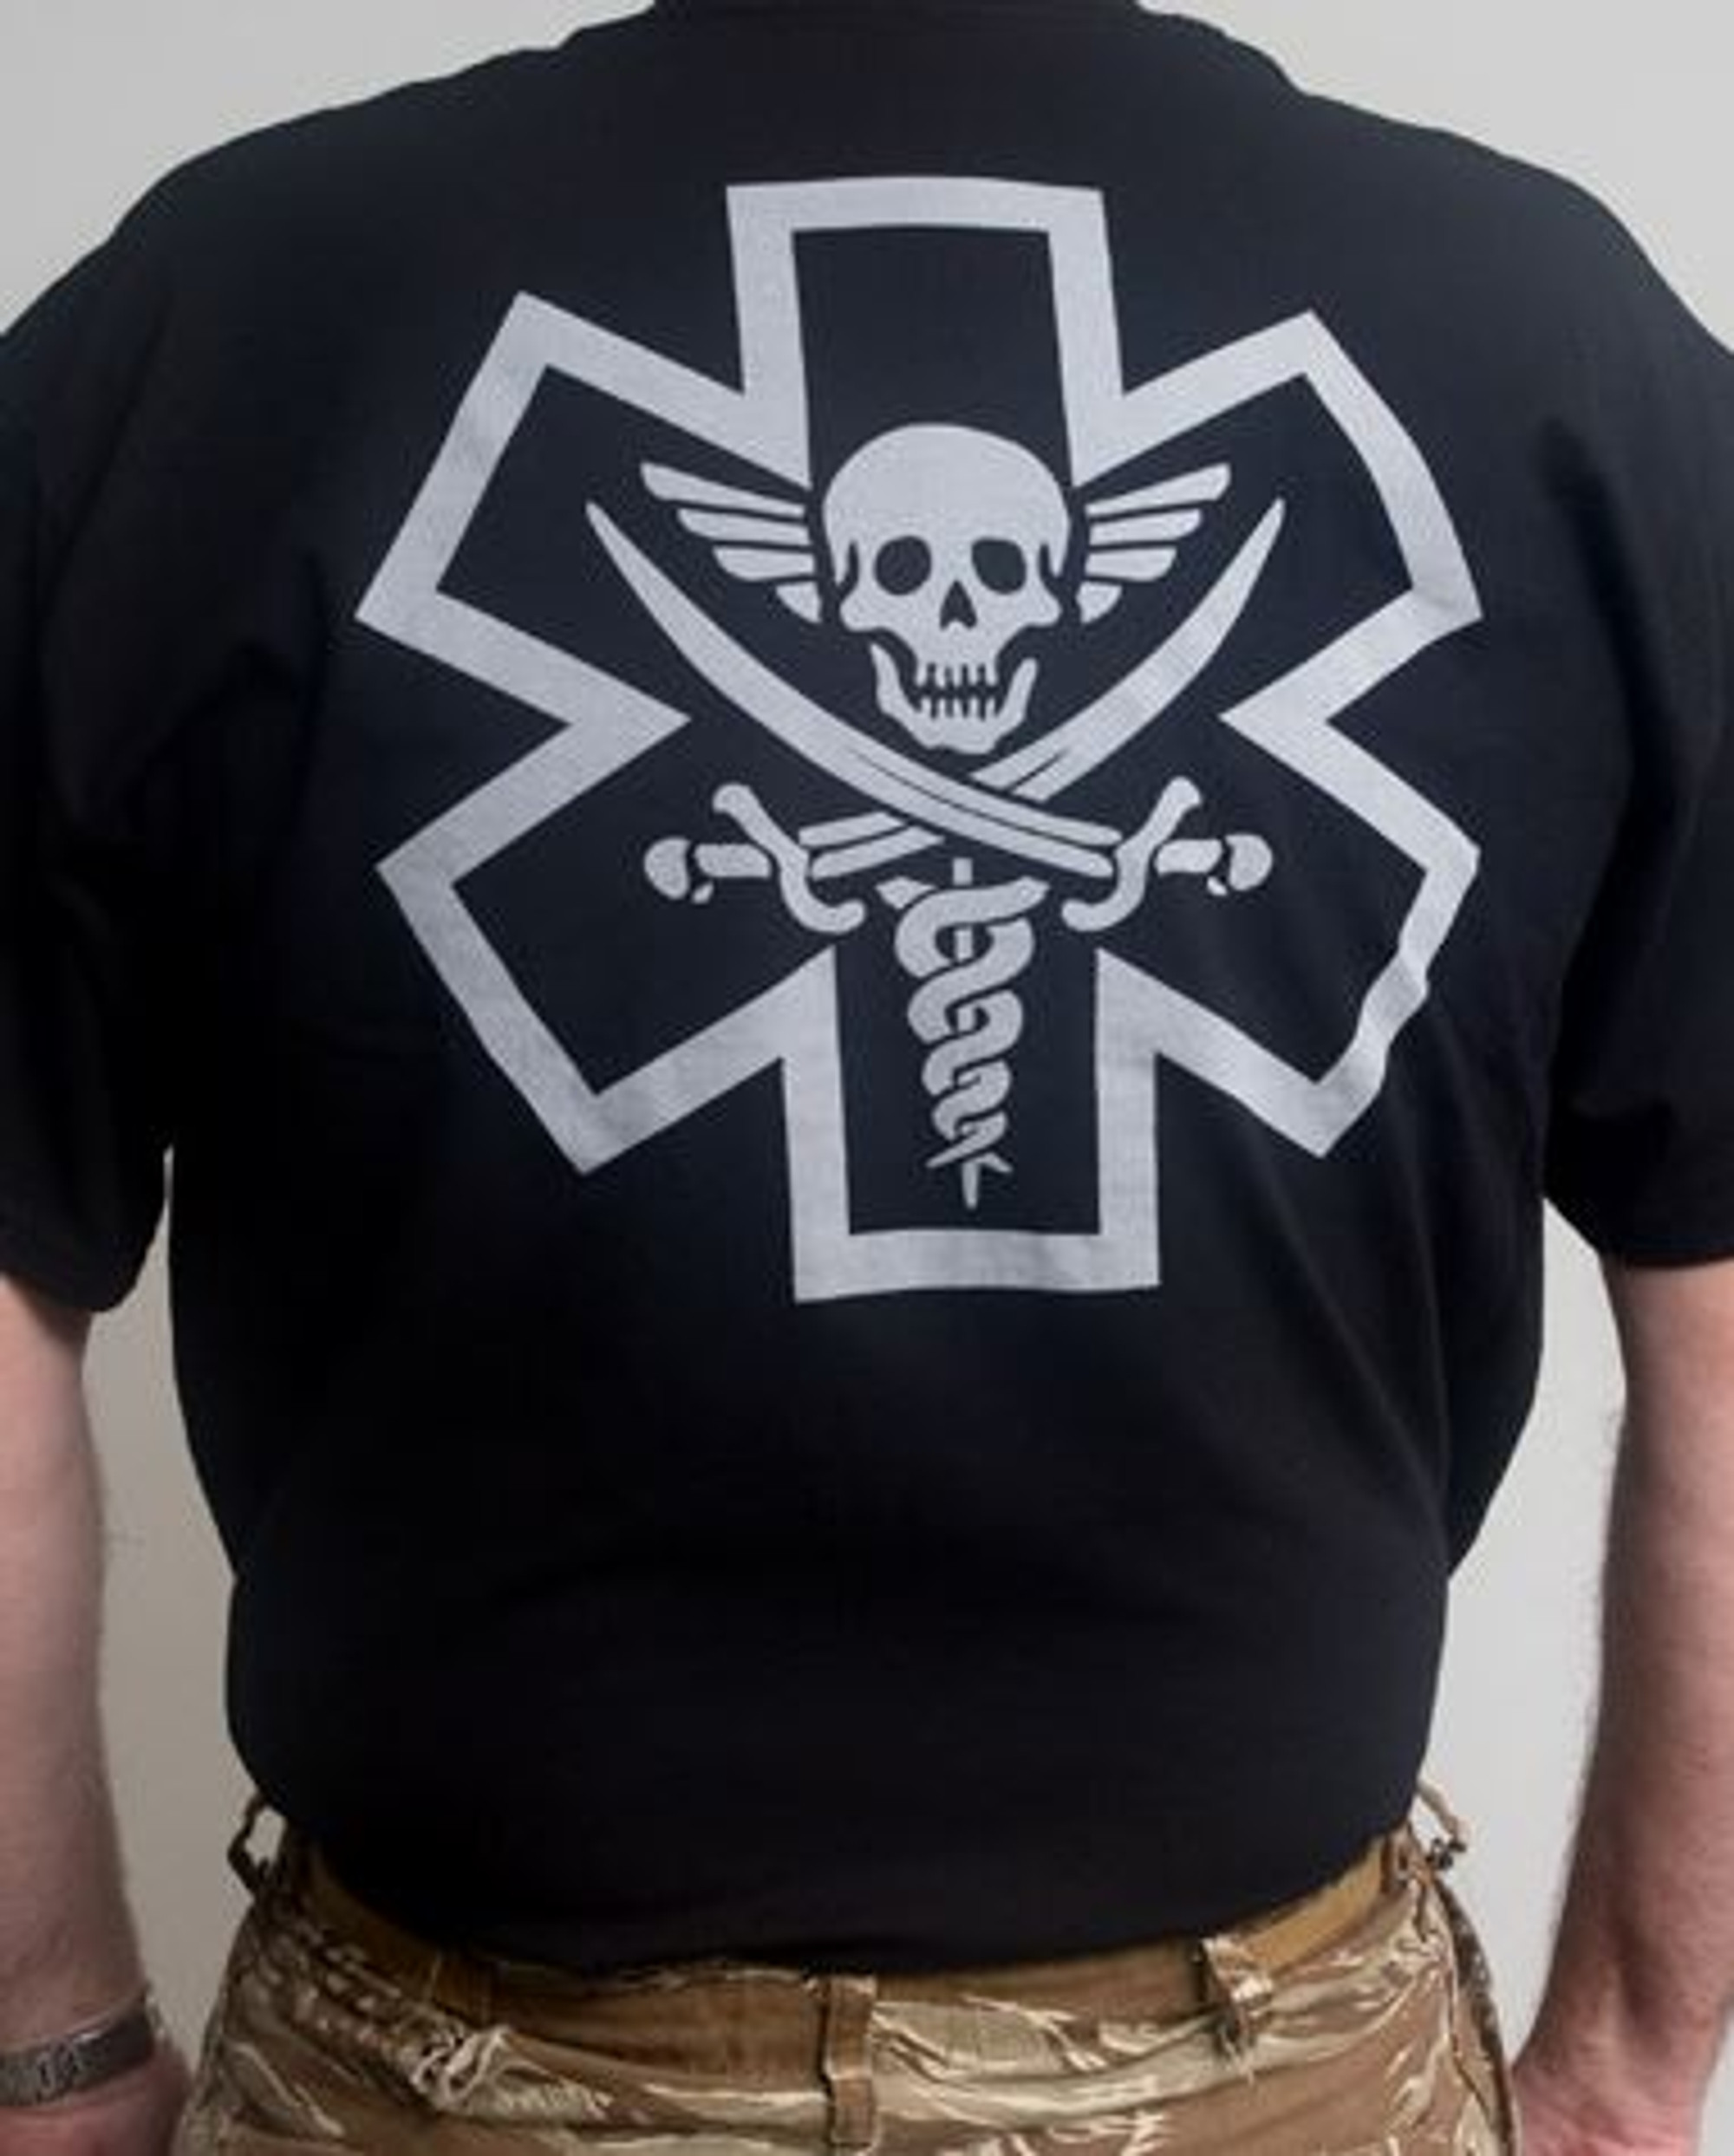 Mil-Spec Monkey Shirt - Tac-Med Pirate Black